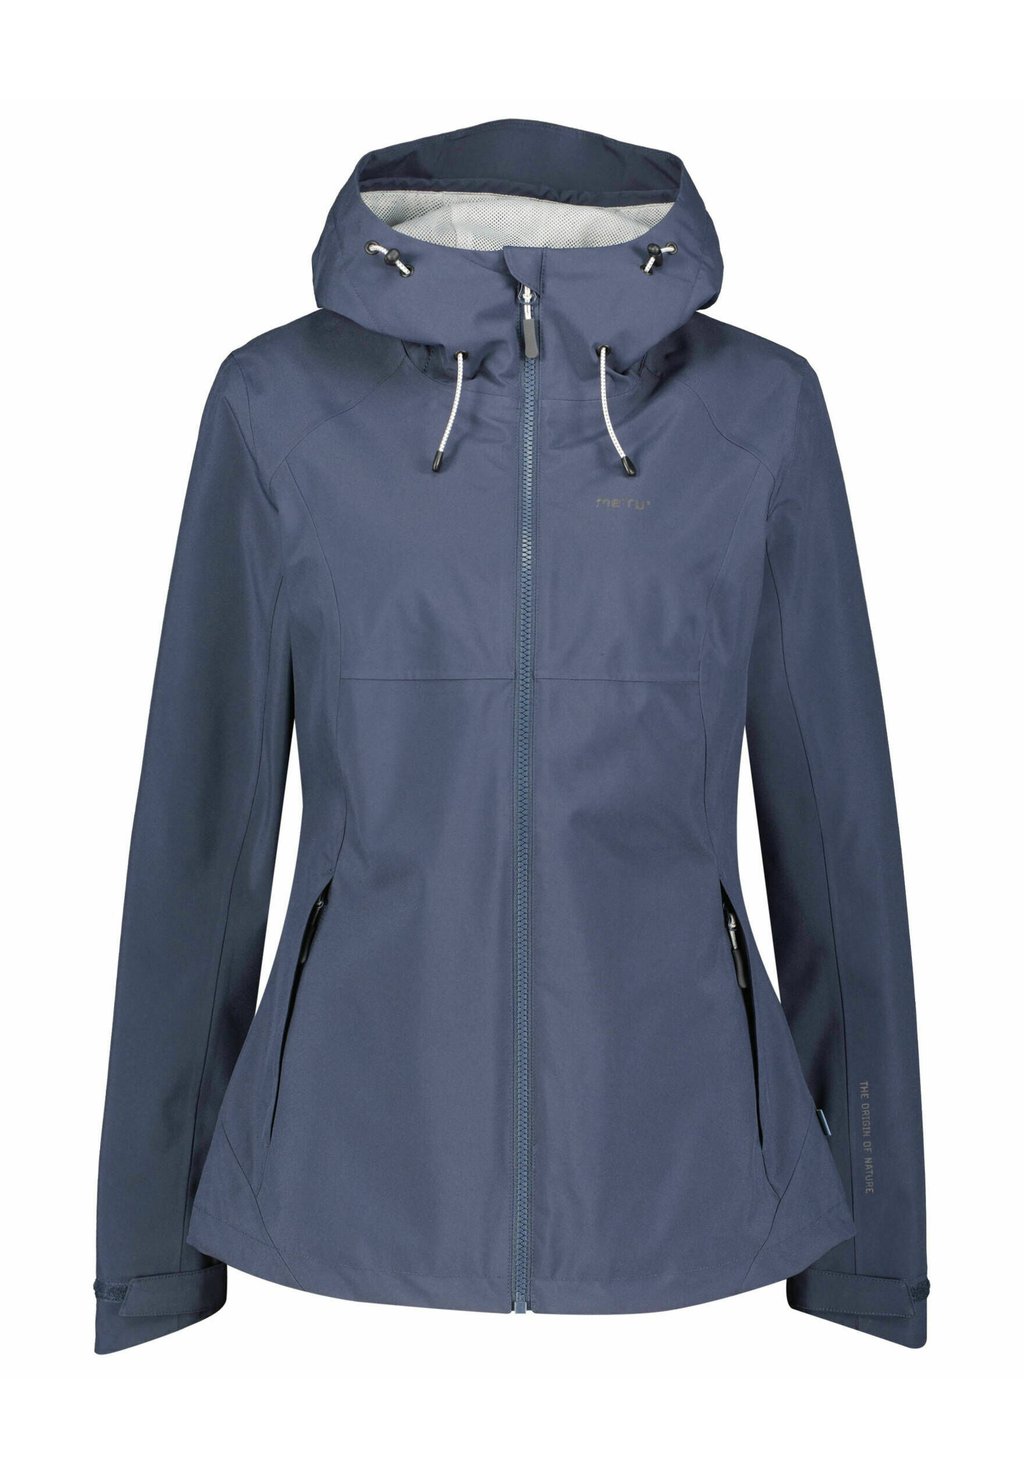 Дождевик/водоотталкивающая куртка TREKKING SULLANA Meru, цвет nachtblau (301) клей kroxx циакрин 301 20мл kroxx 301 20